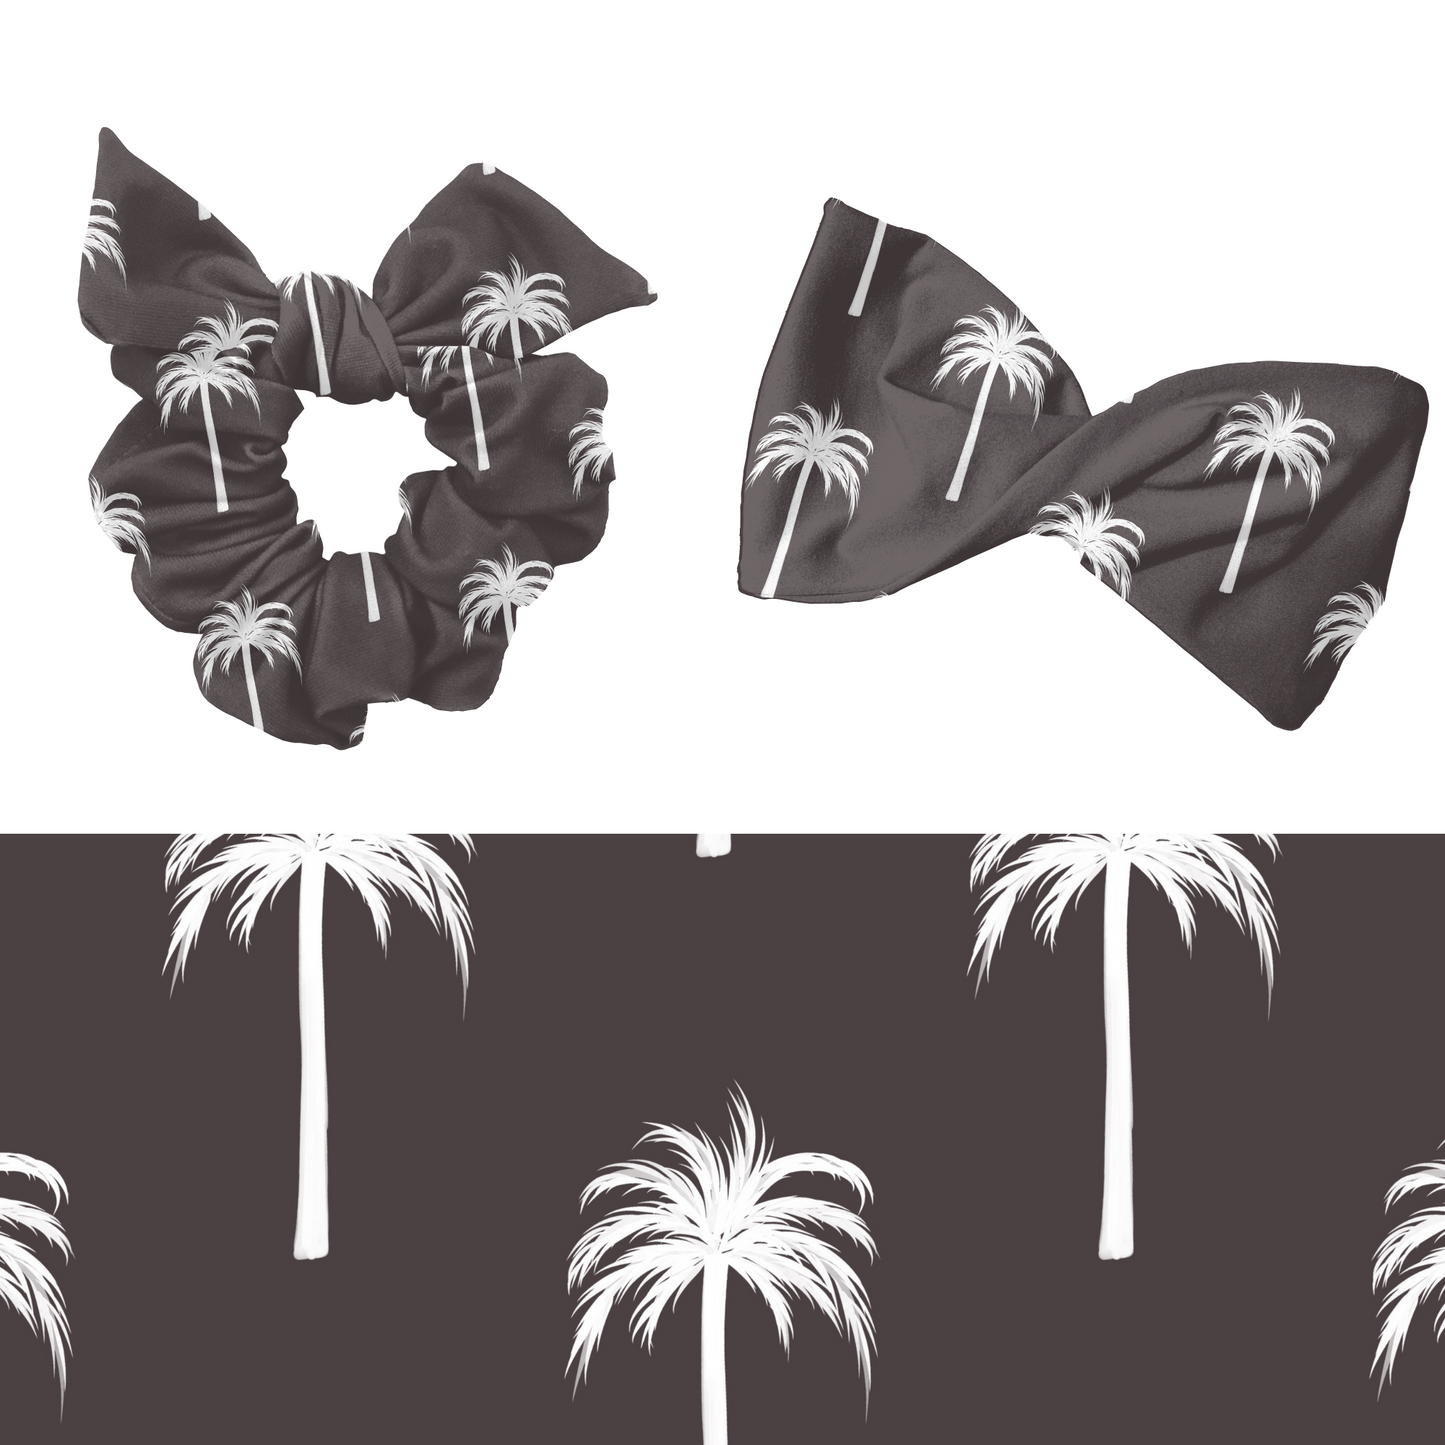 Black & White Palm Trees Pattern